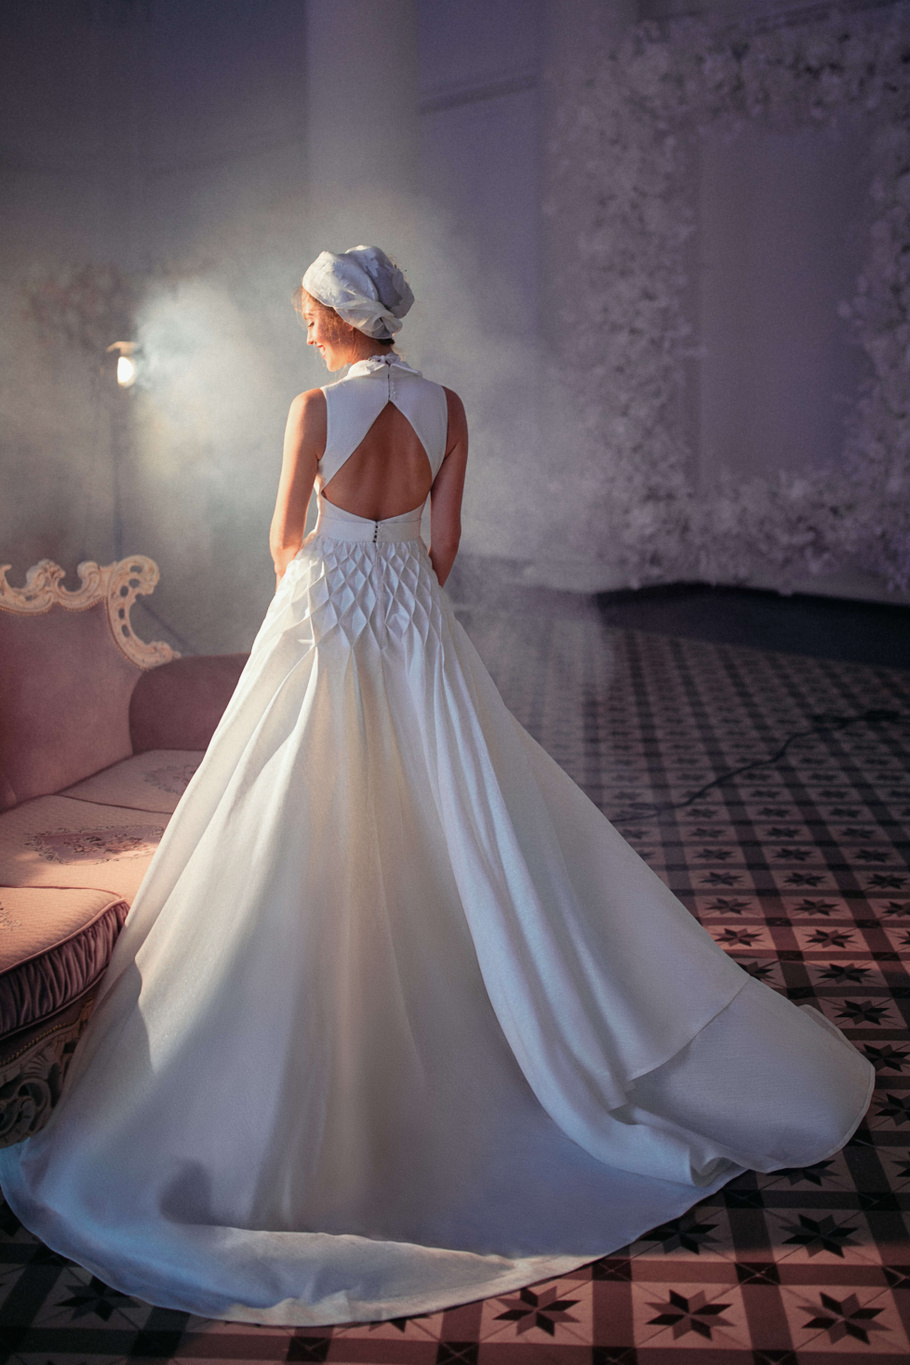 Купить свадебное платье «Астриа» Бламмо Биамо из коллекции Свит Лайф 2021 года в Воронеже